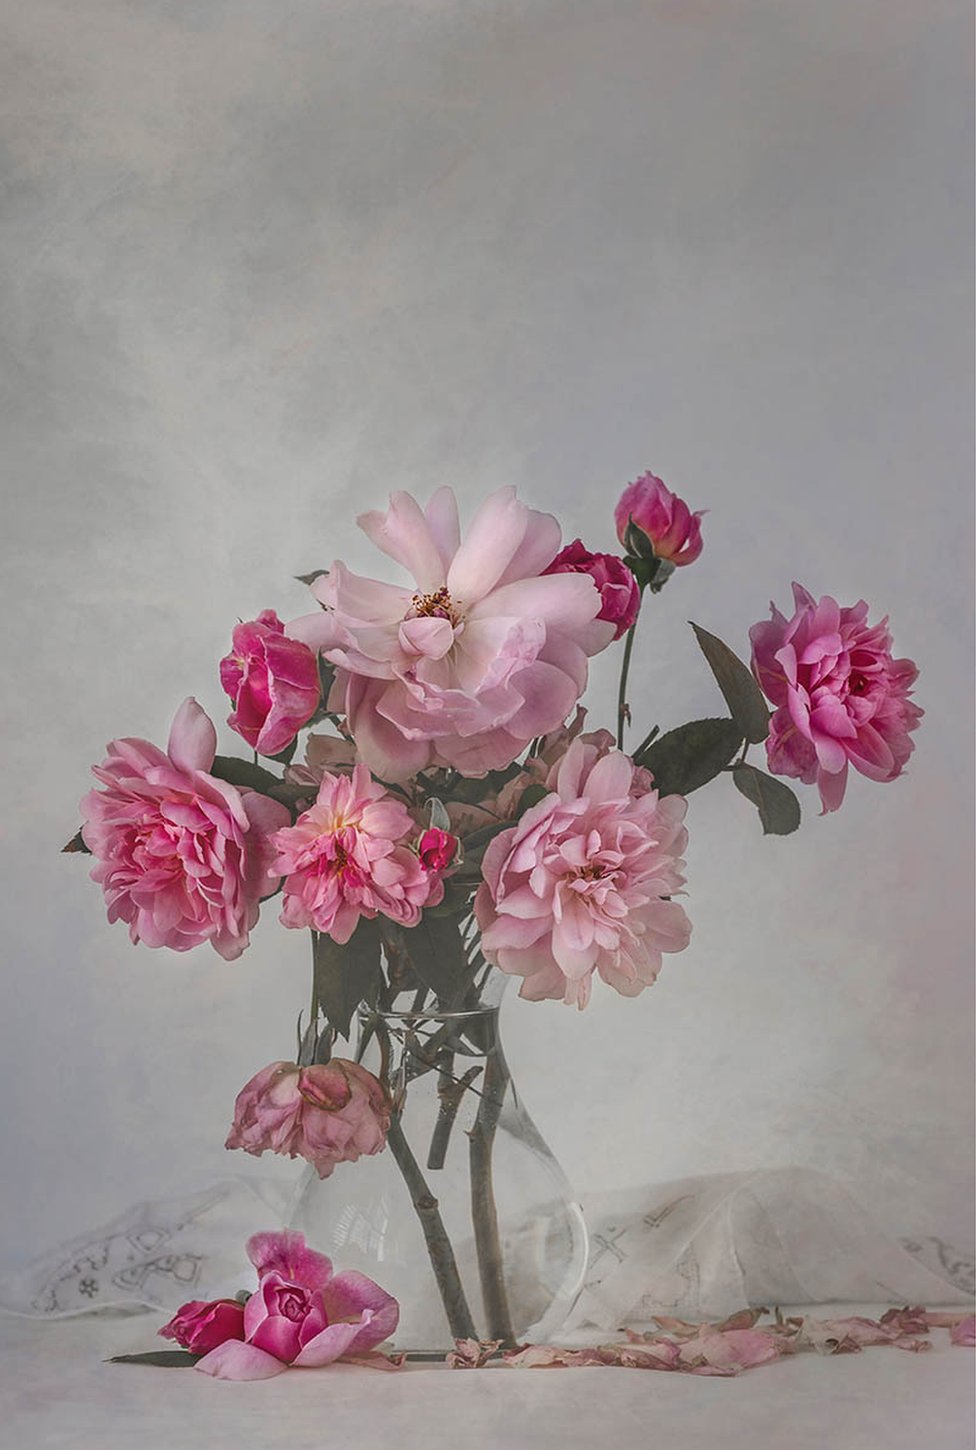 Увядшие розовые розы в вазе с льняными салфетками на столе